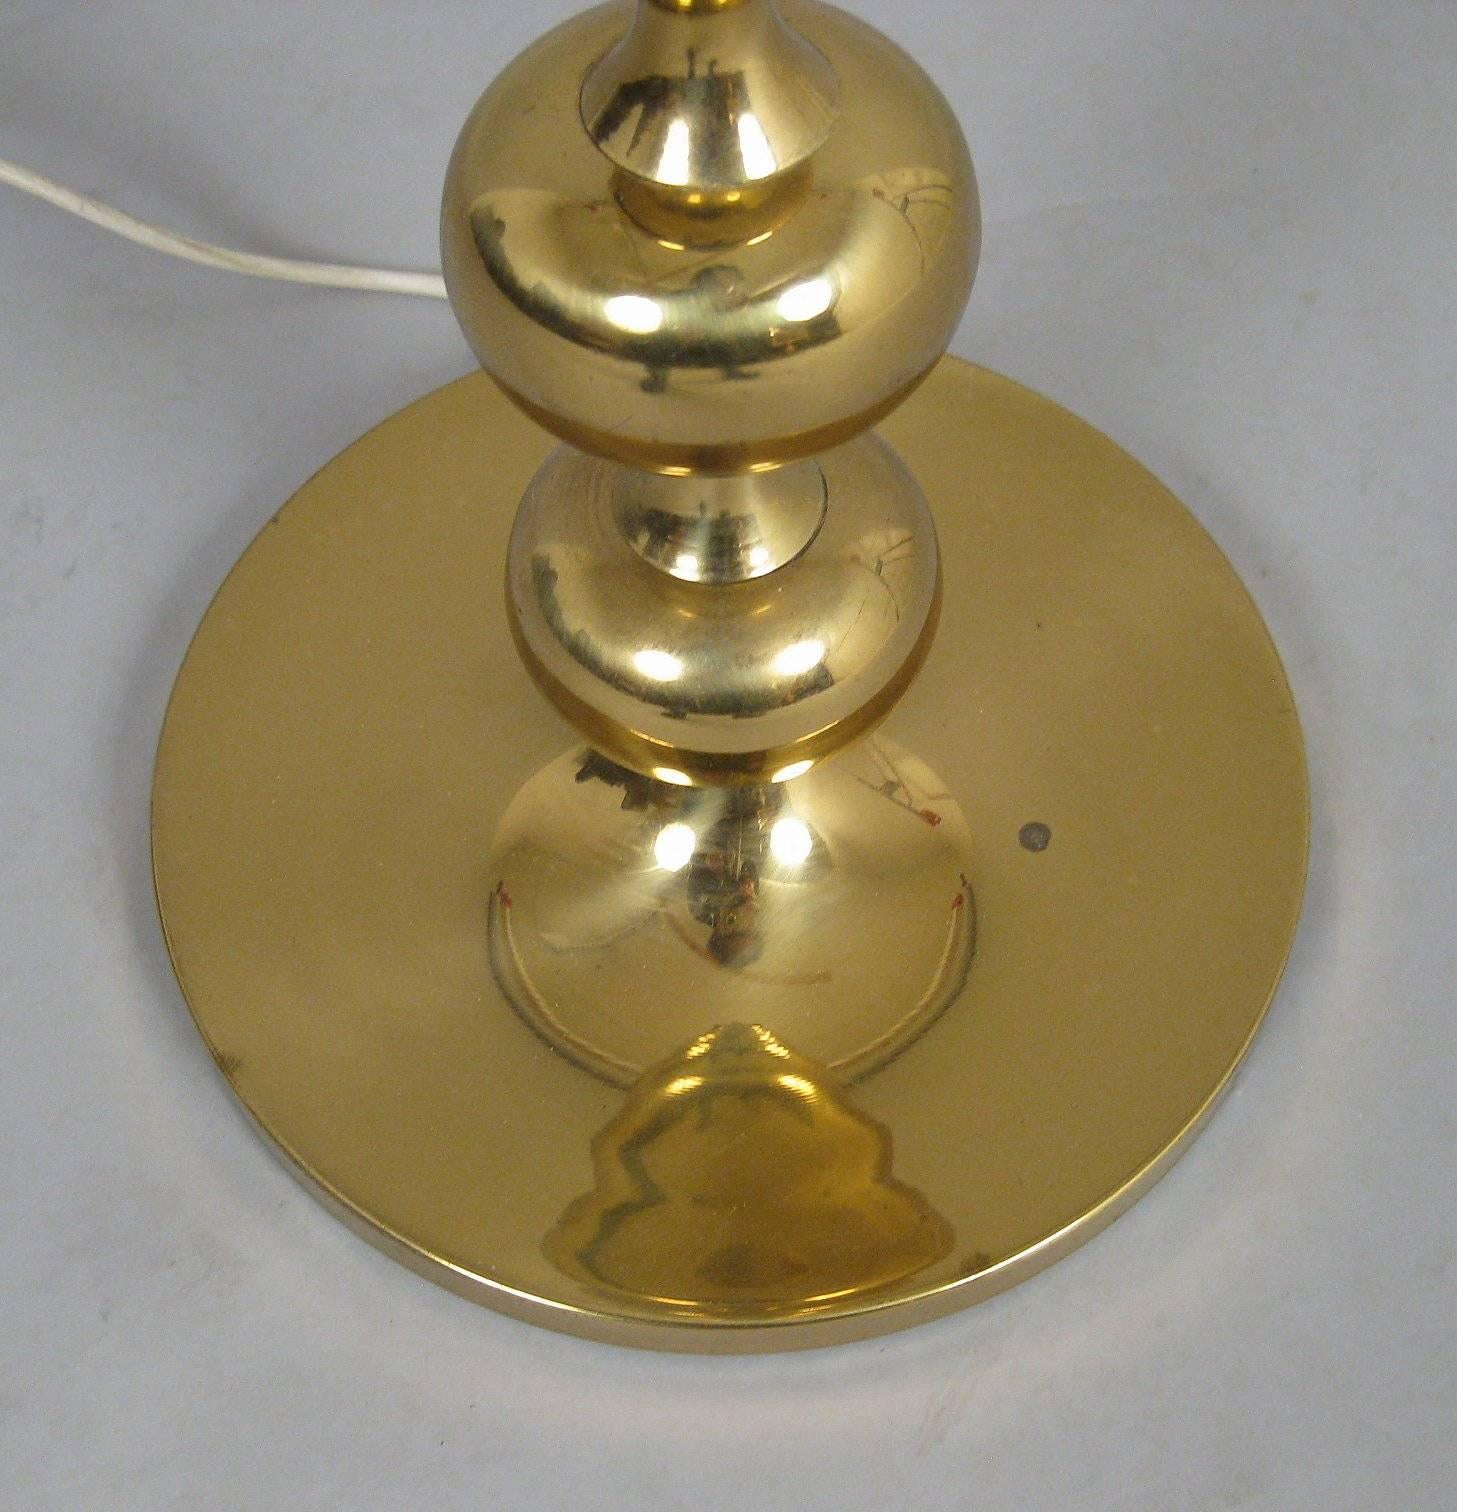 Scandinavian Modern Danish 1960s-1970s Brass Floor Sphere Design Floor Lamp